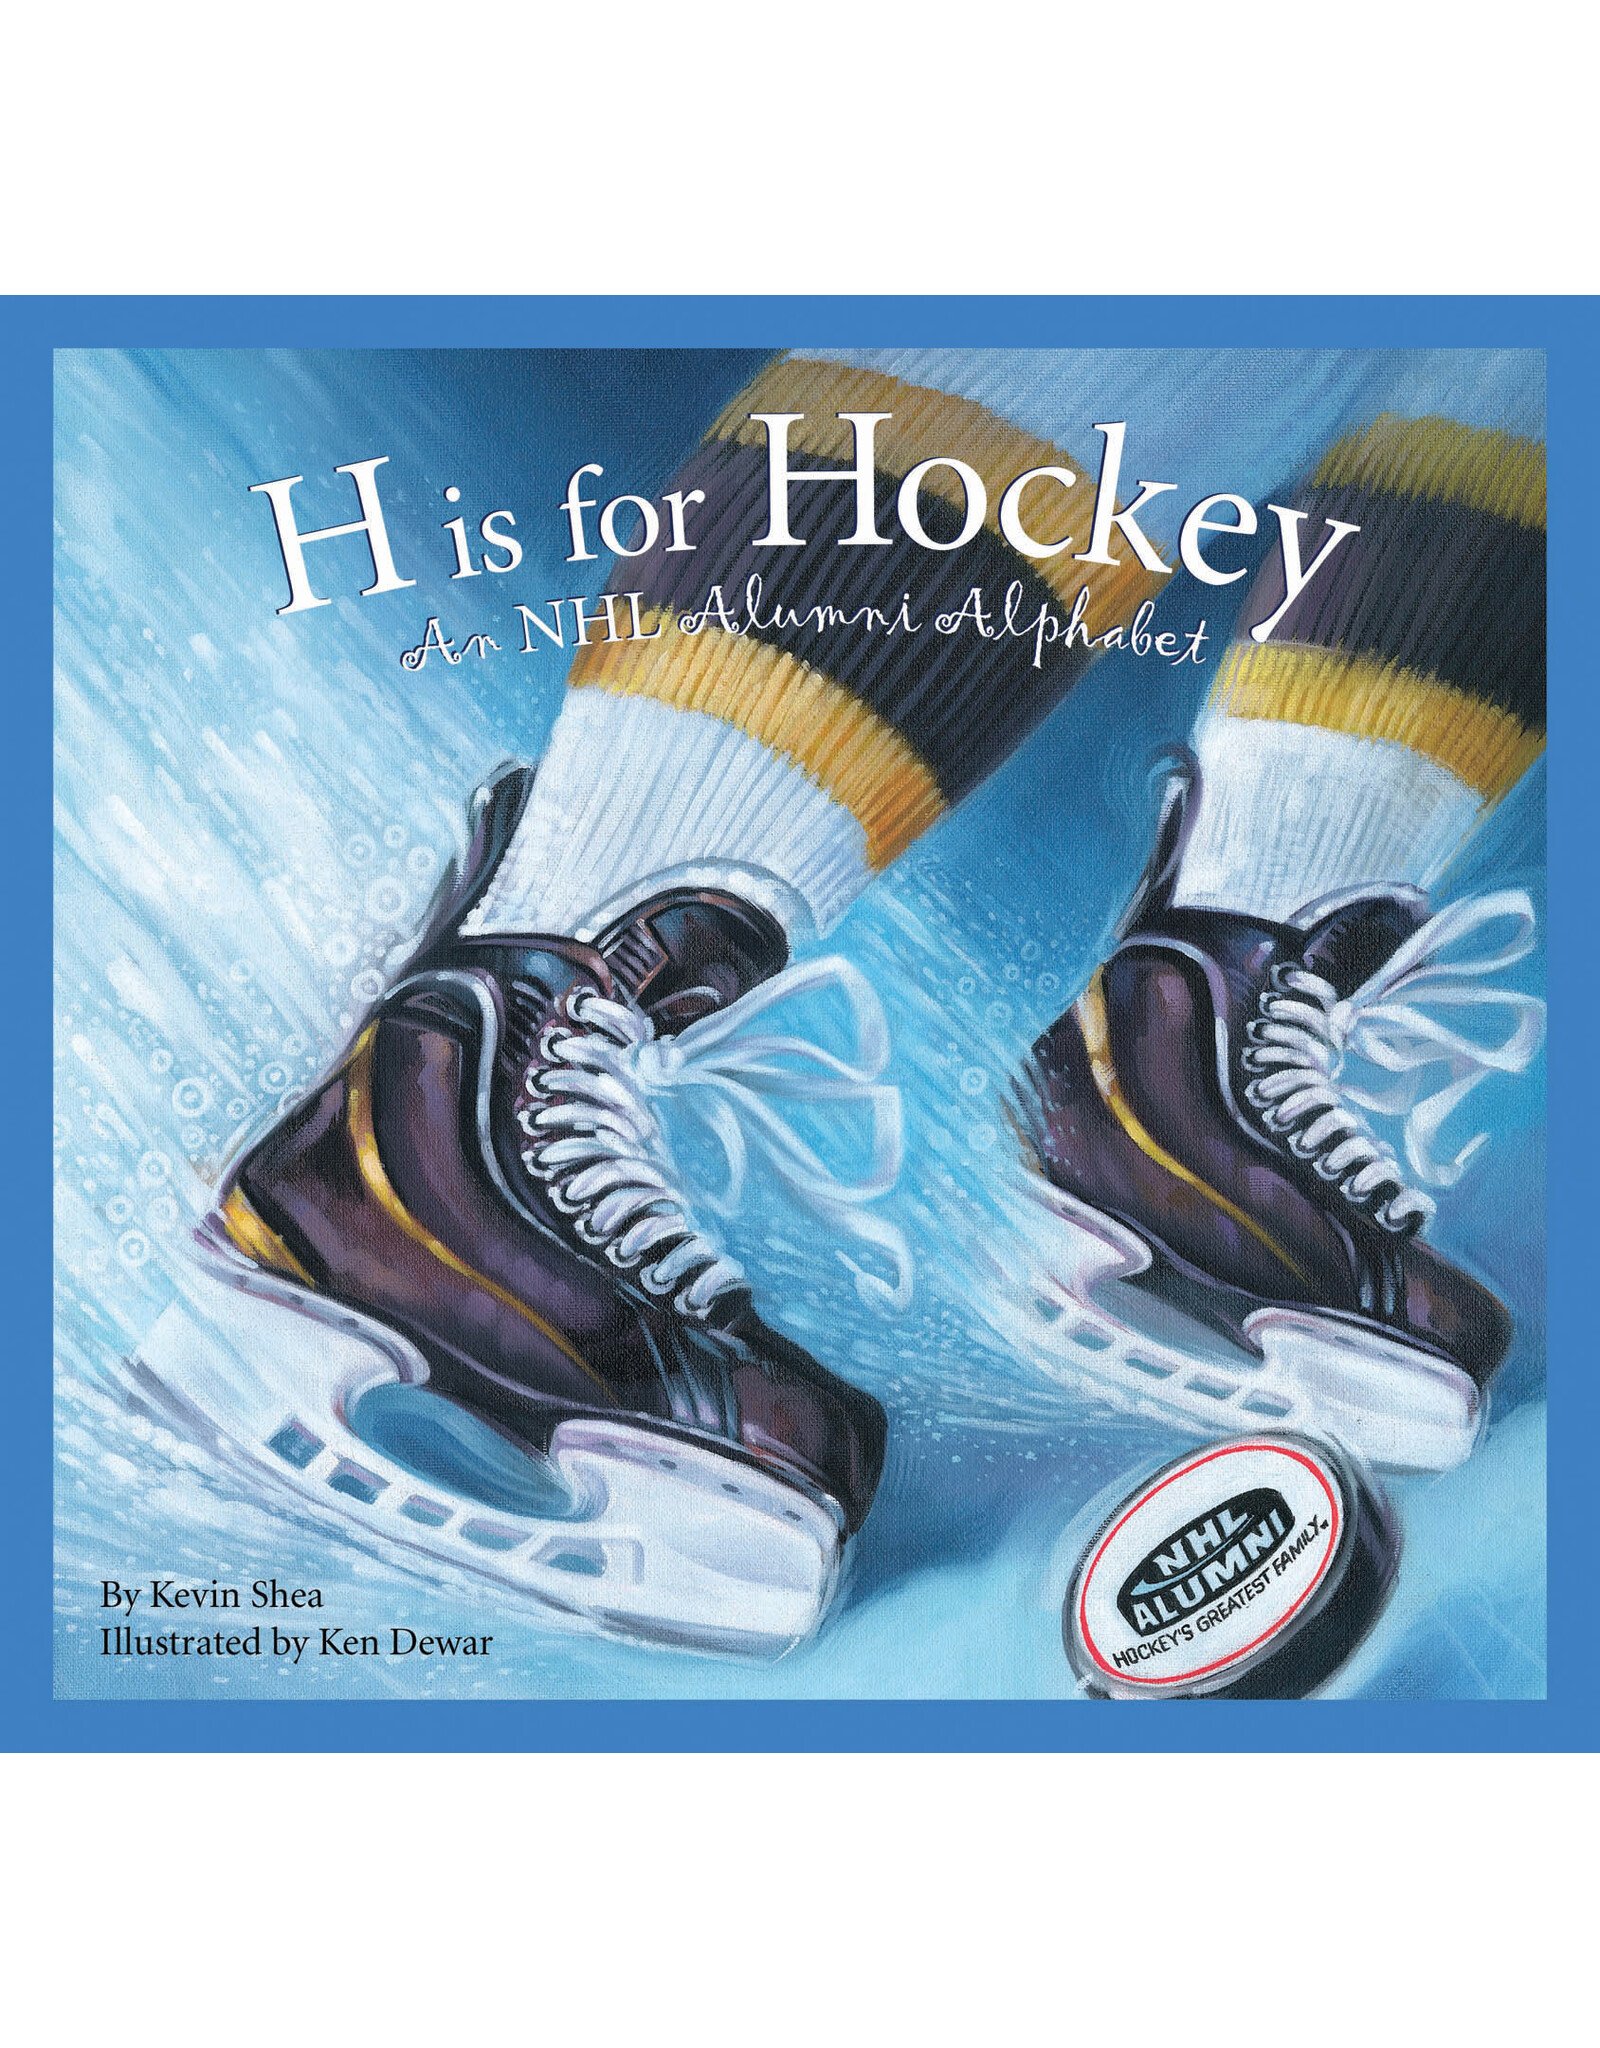 H is for Hockey: A NHL Alumni Alphabet